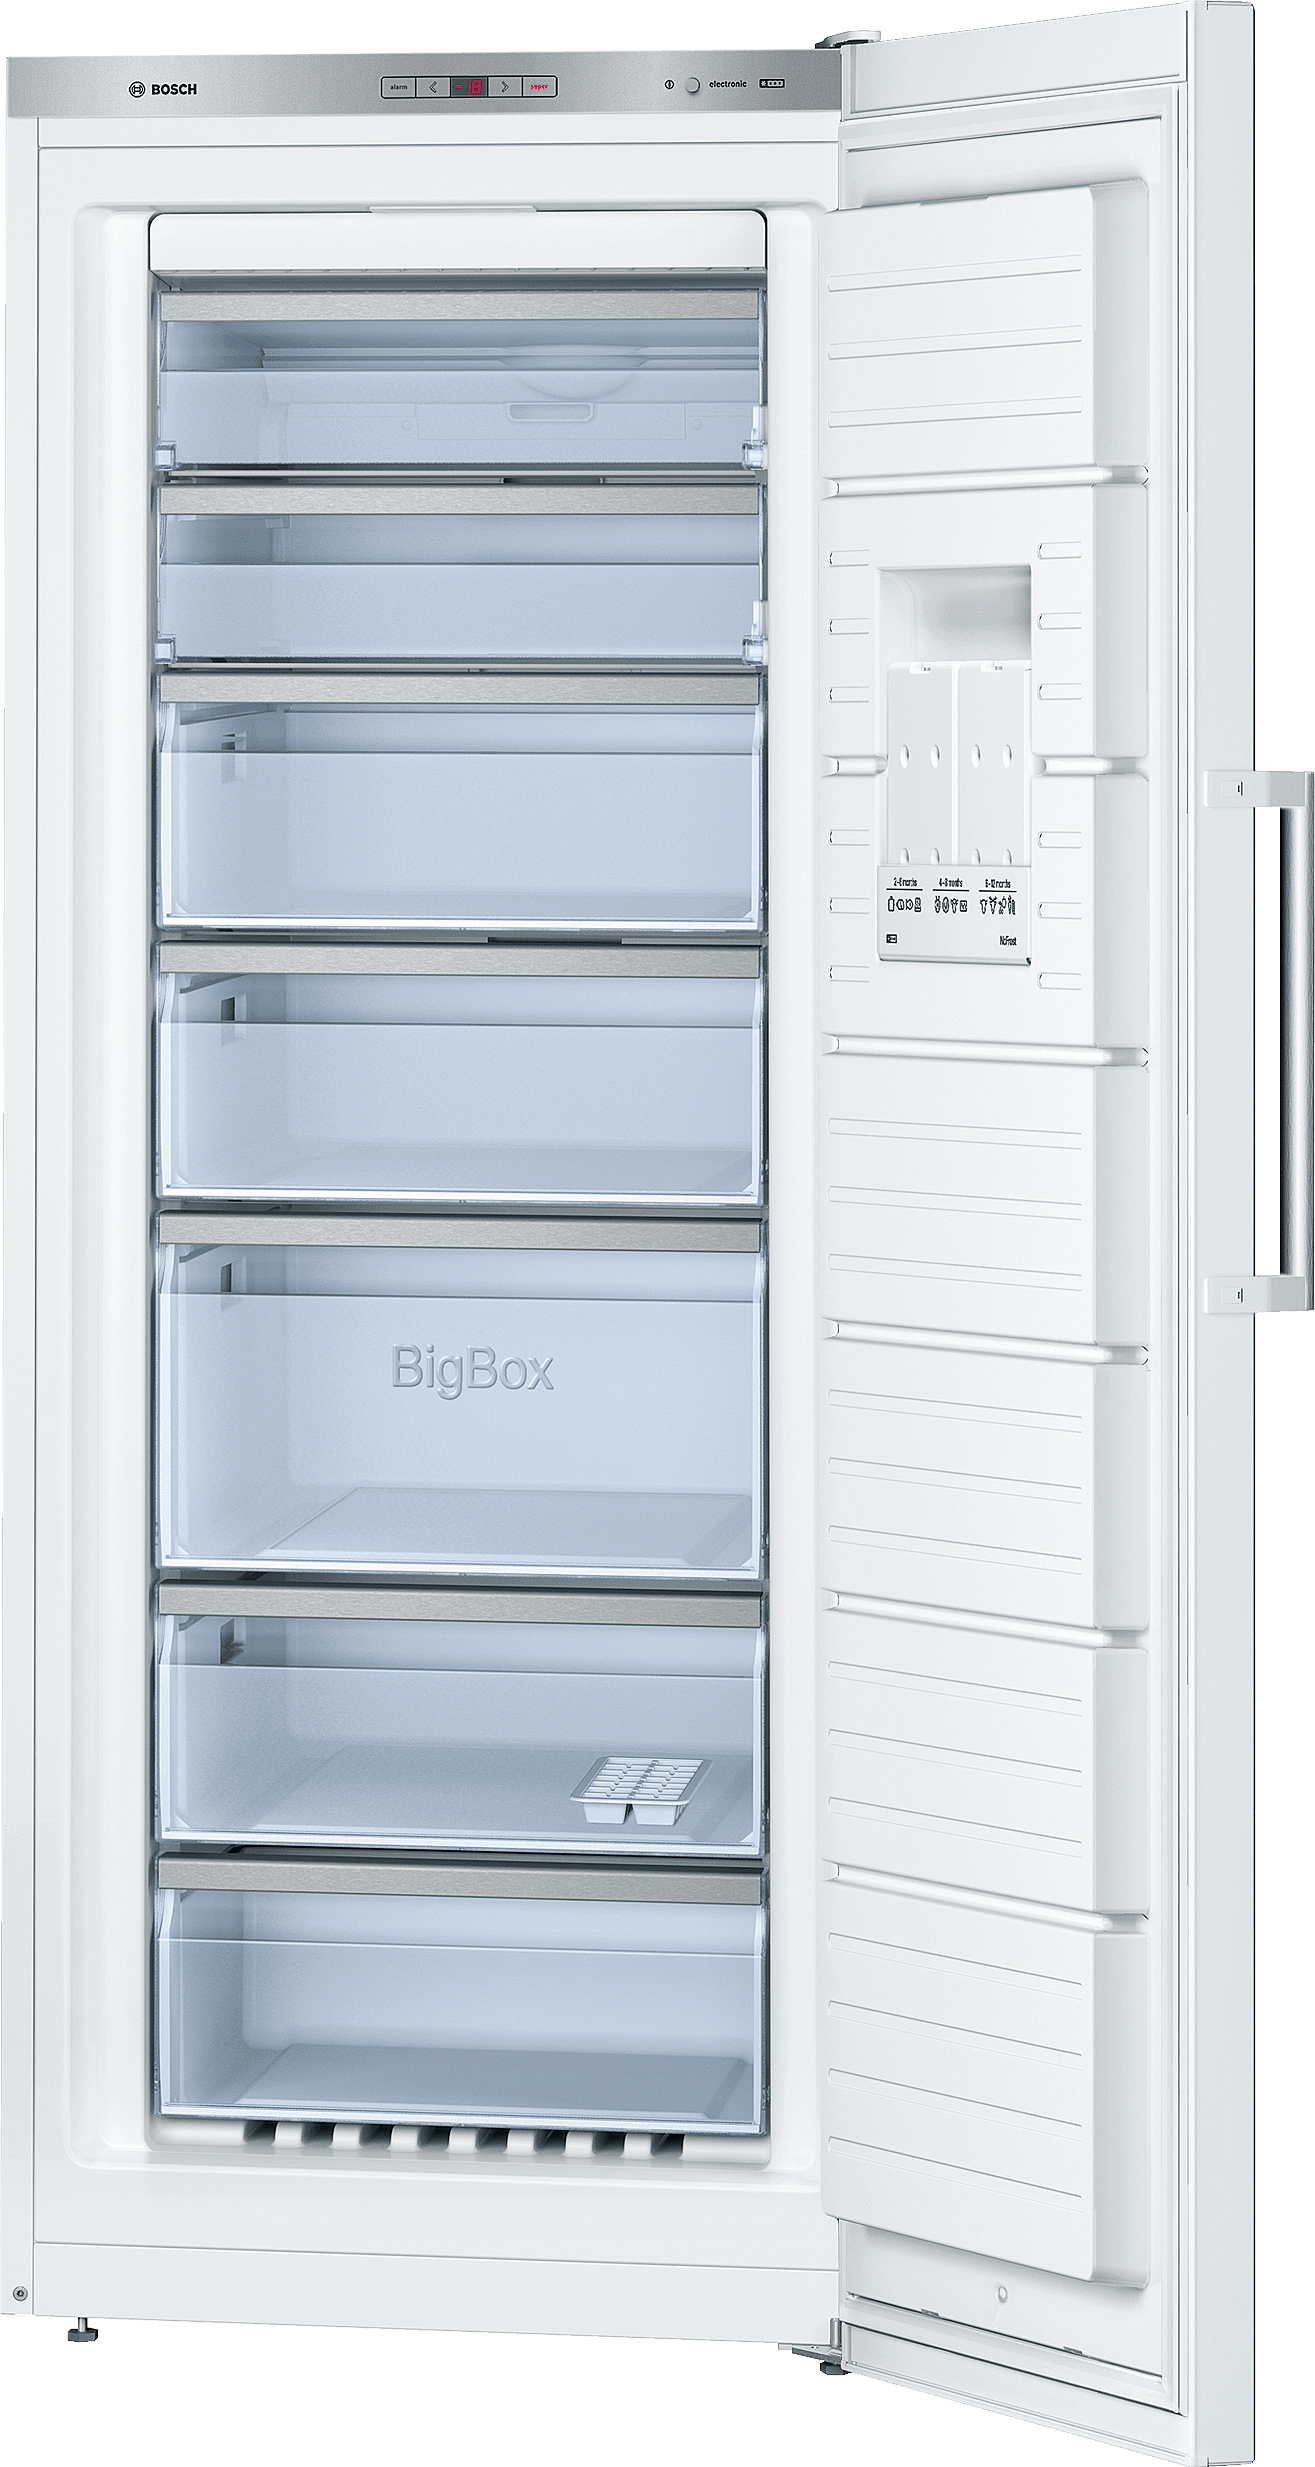 Qual è lumidità ideale per un congelatore verticale?